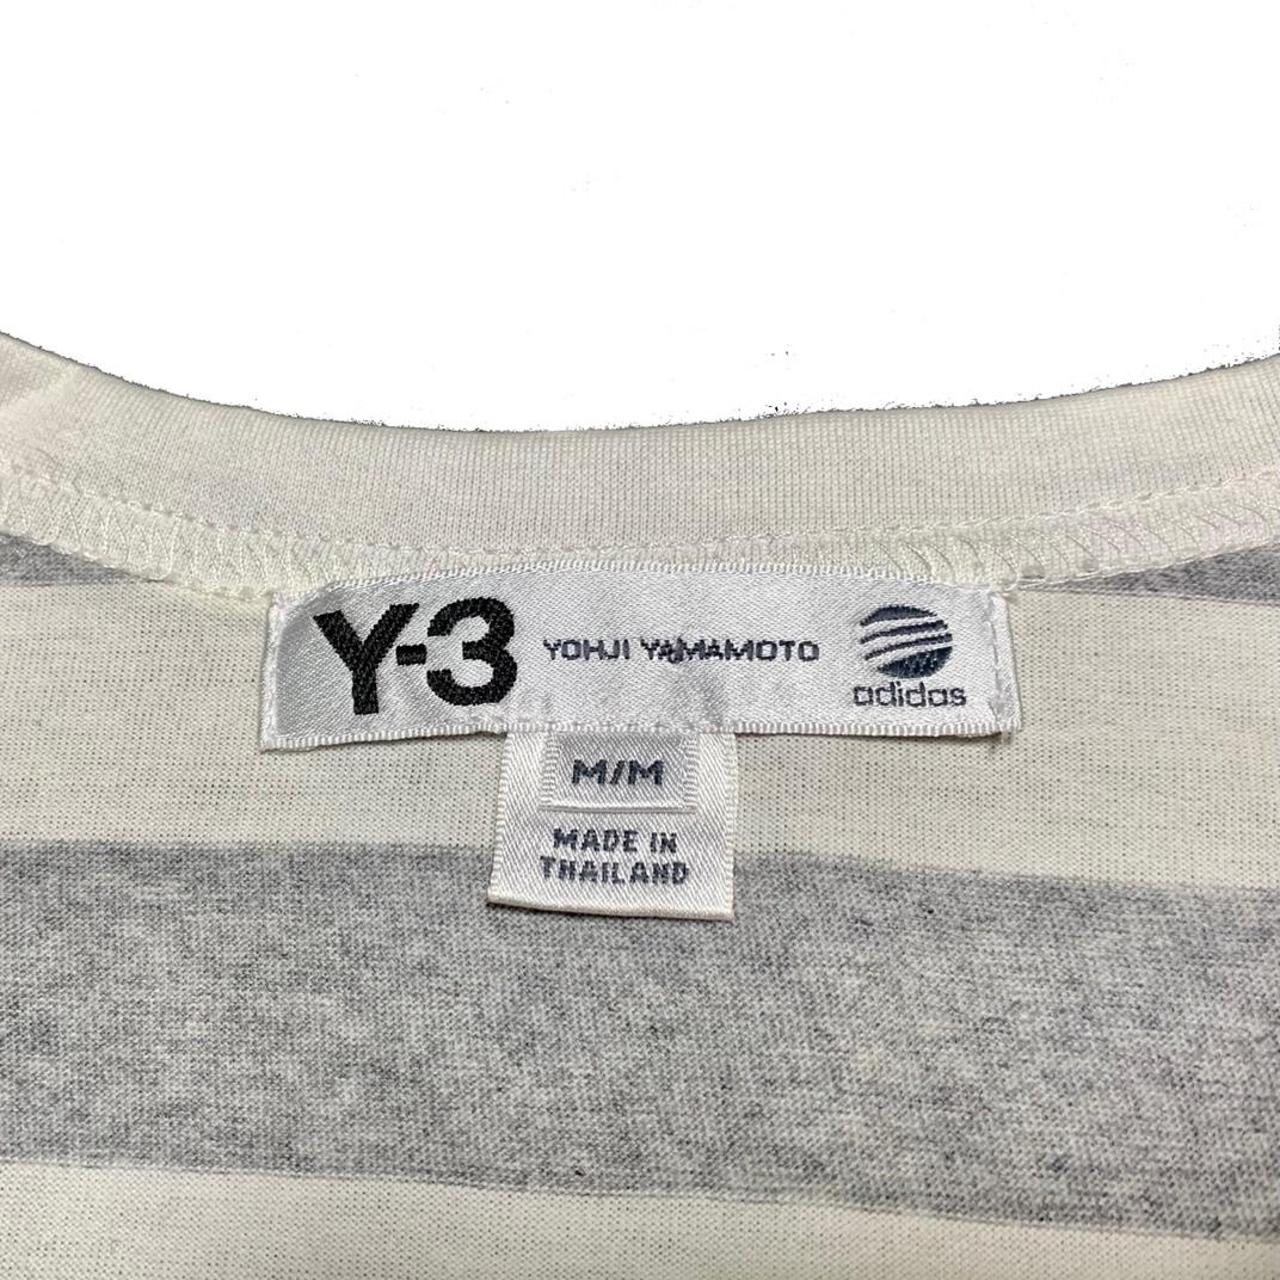 Product Image 4 - Y-3 Yohji Yamamoto for Adidas